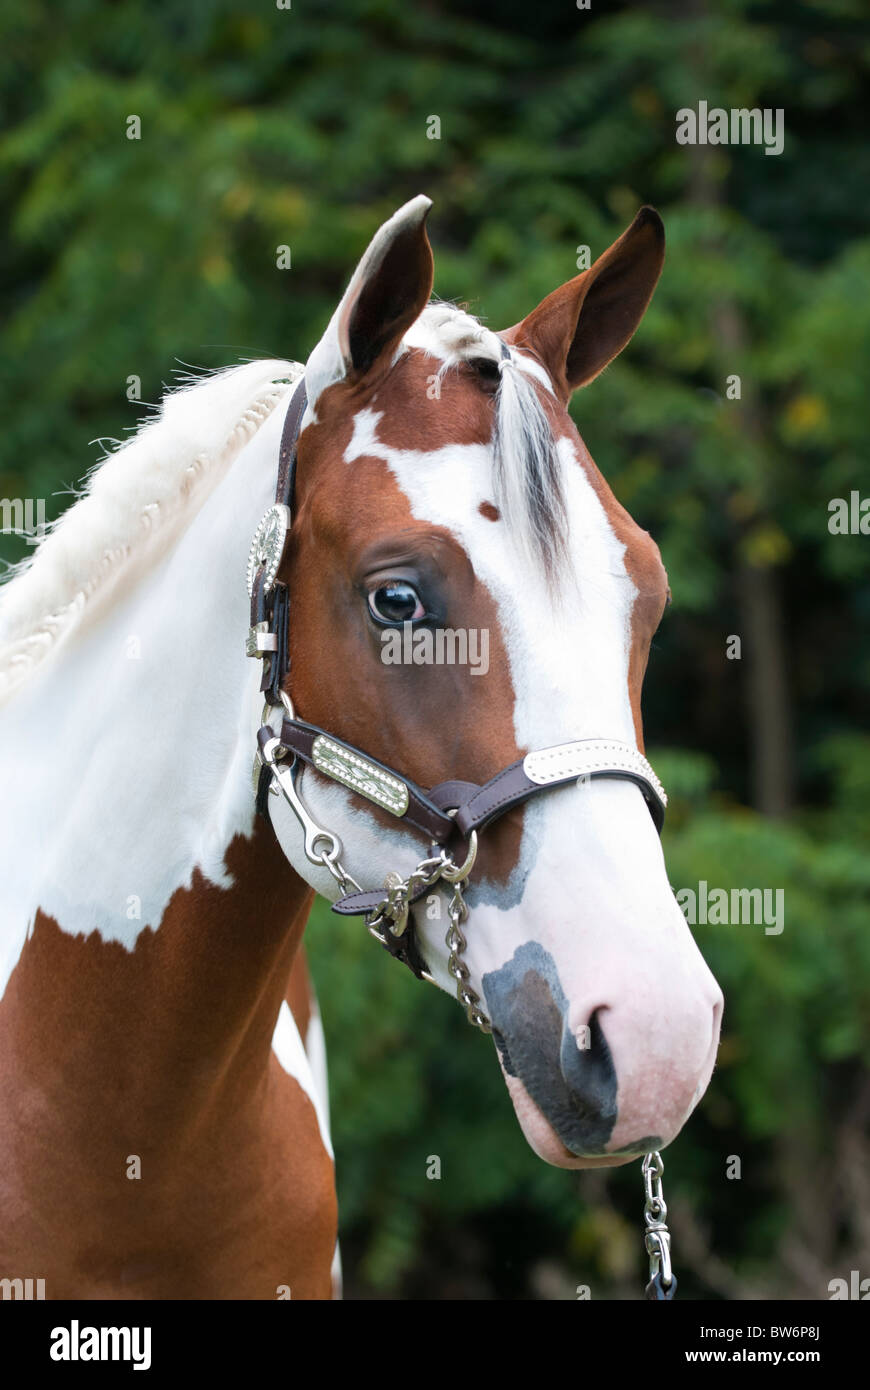 Malen Sie Pferd Jährling Kopf geschossen, eine schöne braune und weiße Tobiano-Stute für eine Pferde-Show-Event aufgeräumt. Stockfoto